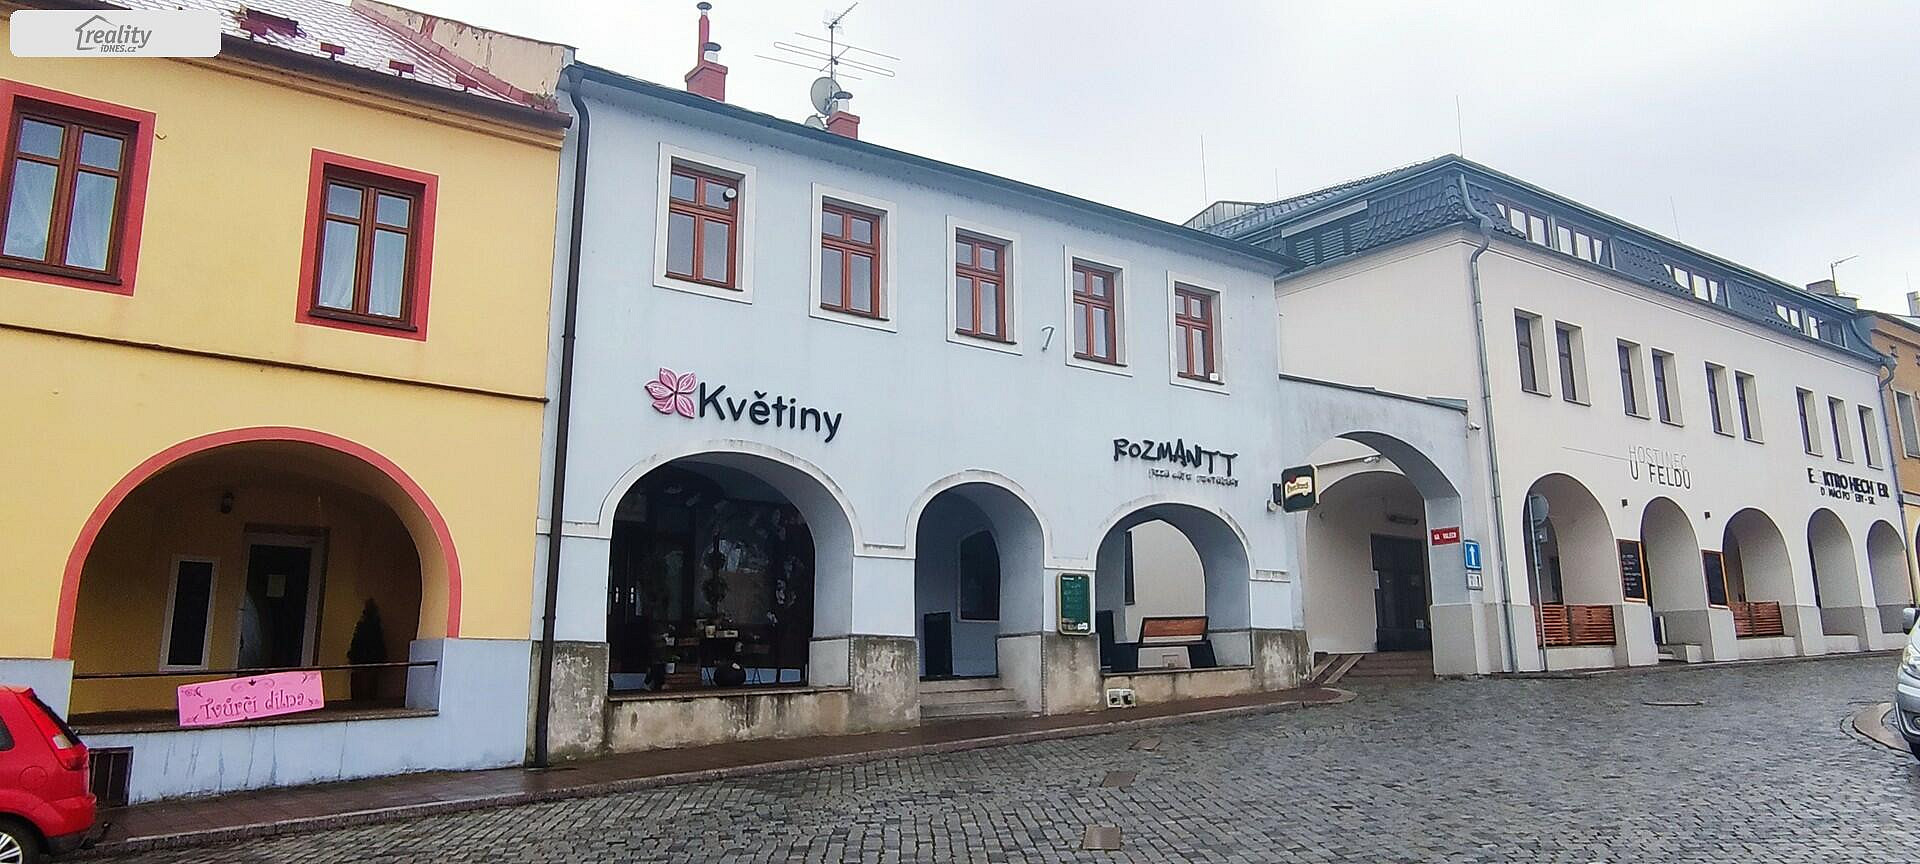 Náměstí, Klimkovice, okres Ostrava-město